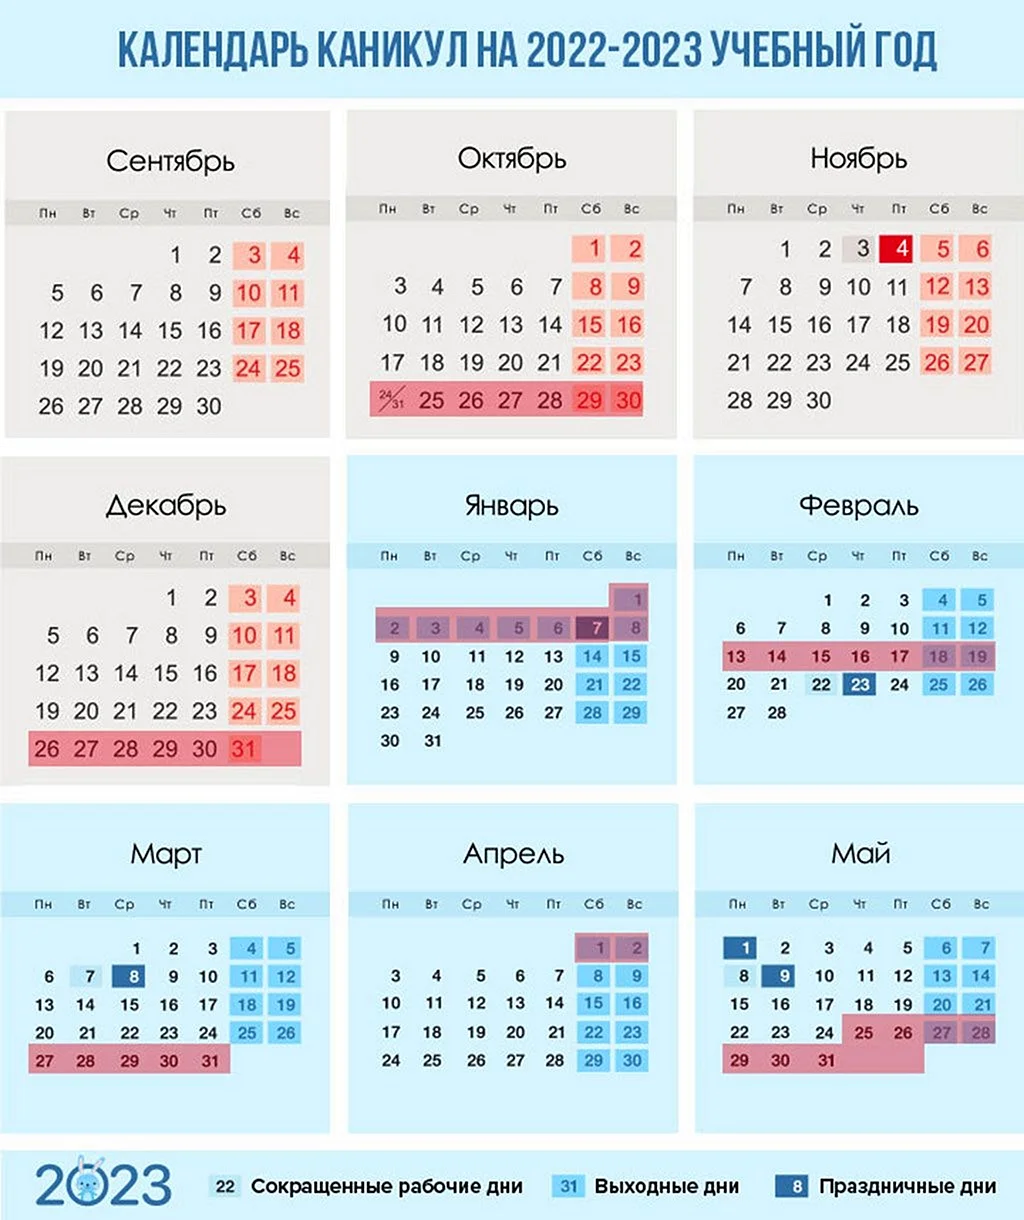 Календарь каникул на 2022-2023 учебный год в России